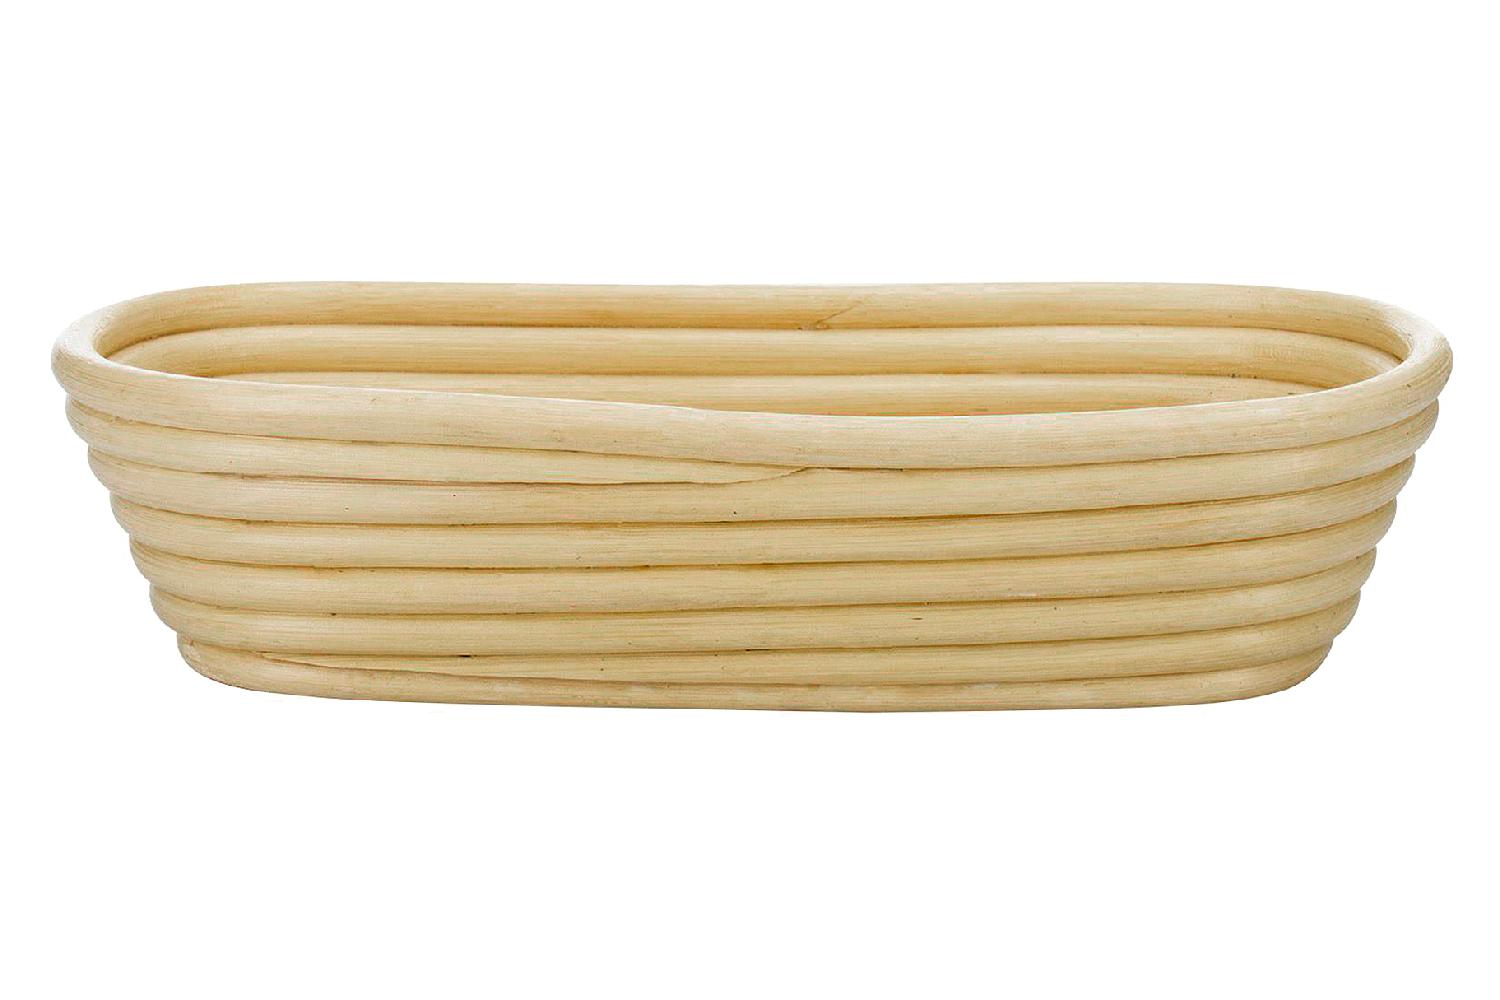 Gärkörbchen oval 27,5x14x7cm oval, aus natürlichem Peddigrohr, zum Gären und  Ruhen von Brotteigen, atmungsaktiv und langlebig